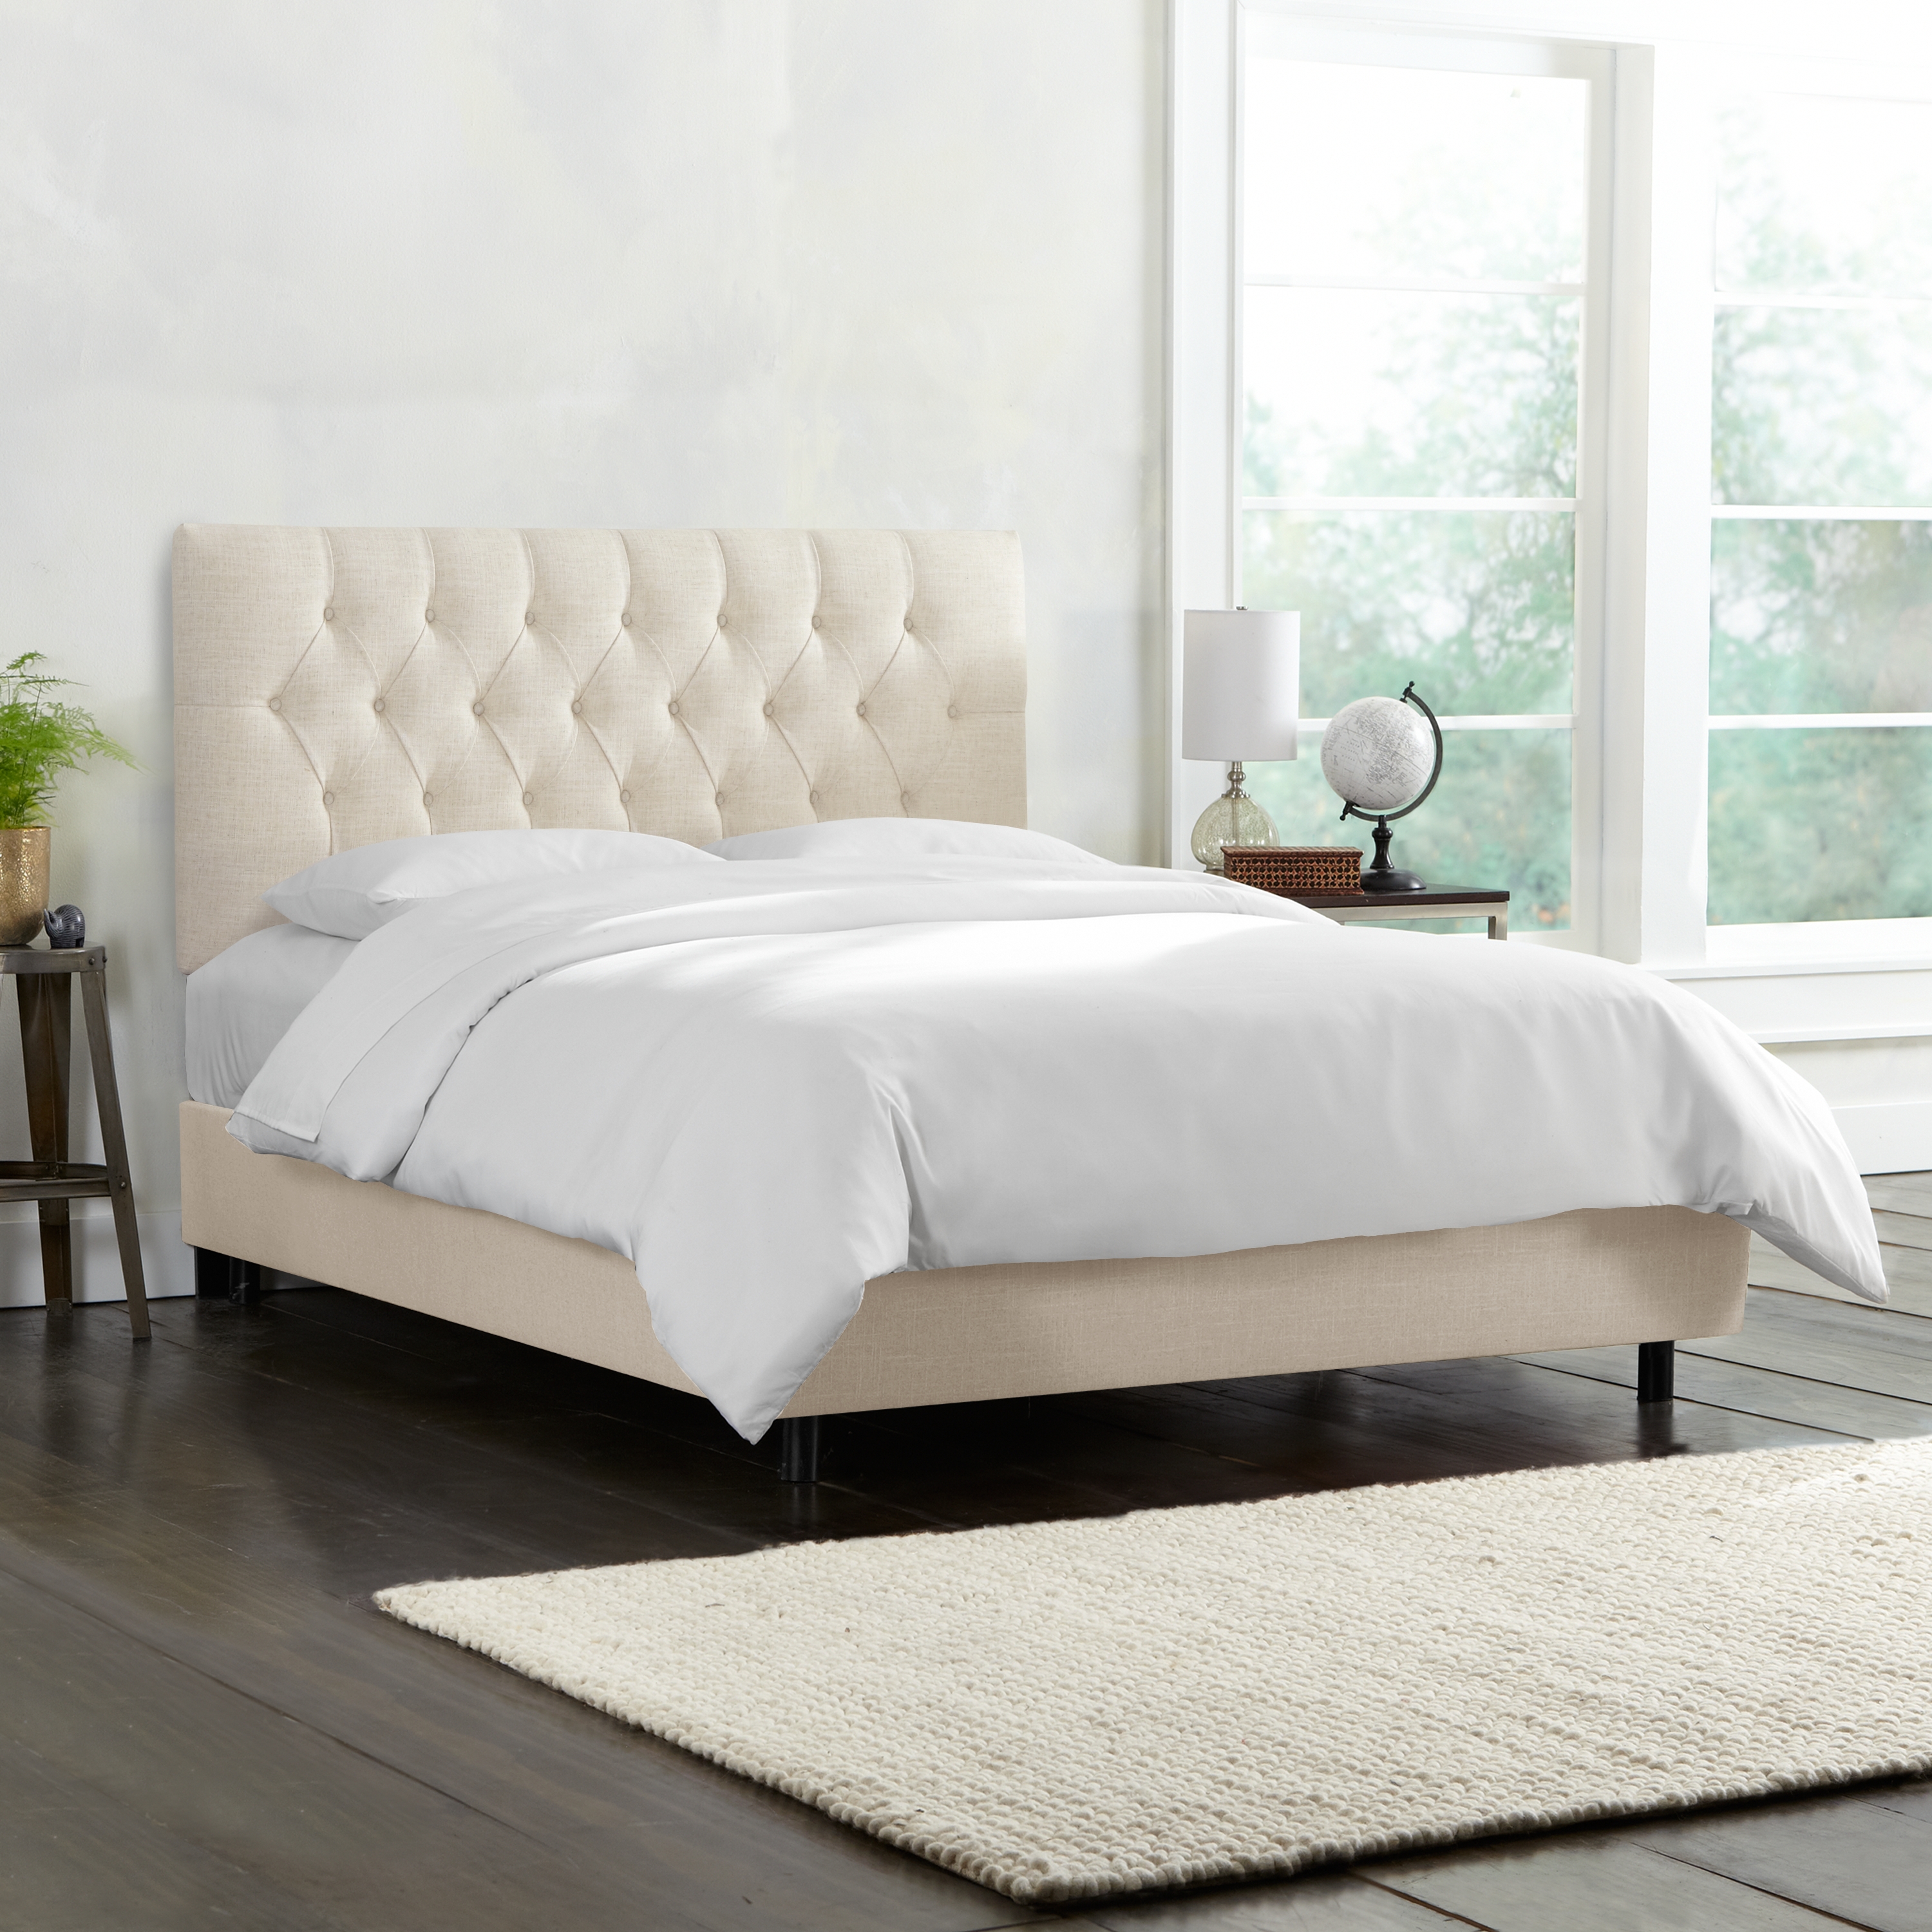 Amarise Bed - Image 1